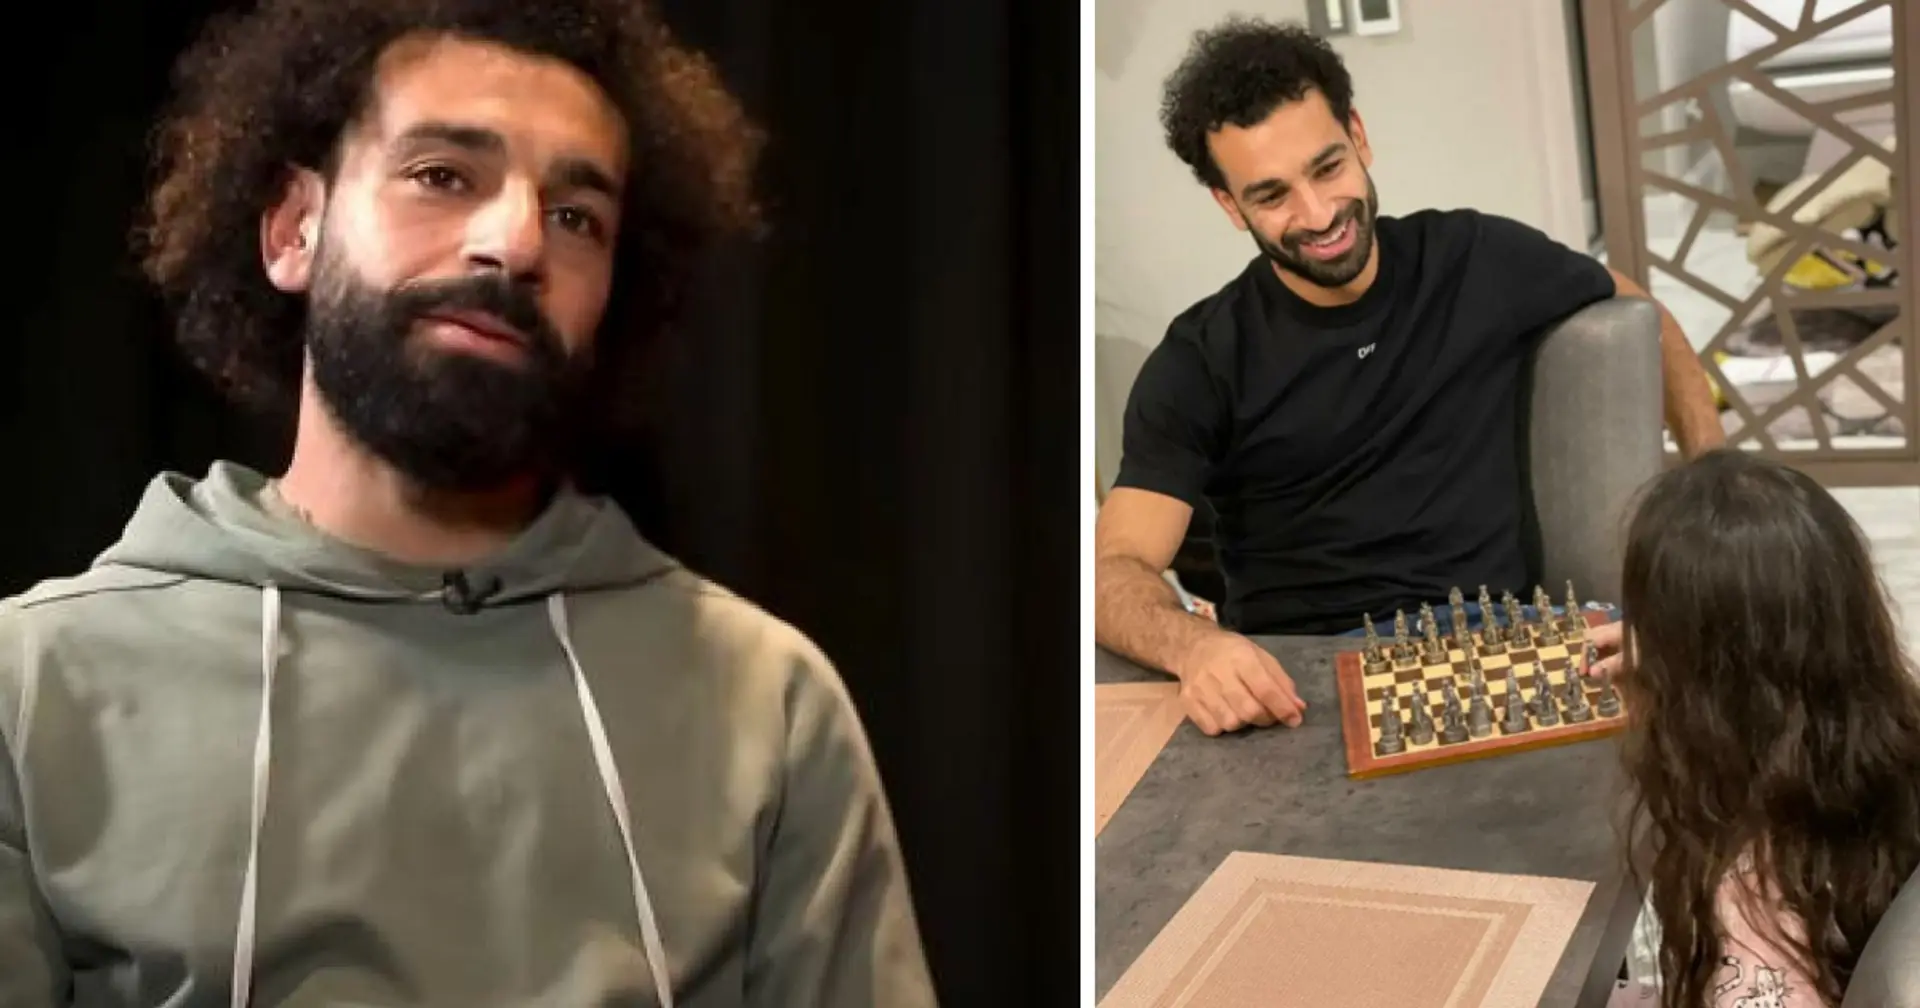 Salah begann mit dem Schachspiel: "Ich bin gut. Ich hoffe, dass ich gegen Carlsen spielen kann, aber niemand hat eine Chance gegen ihn"